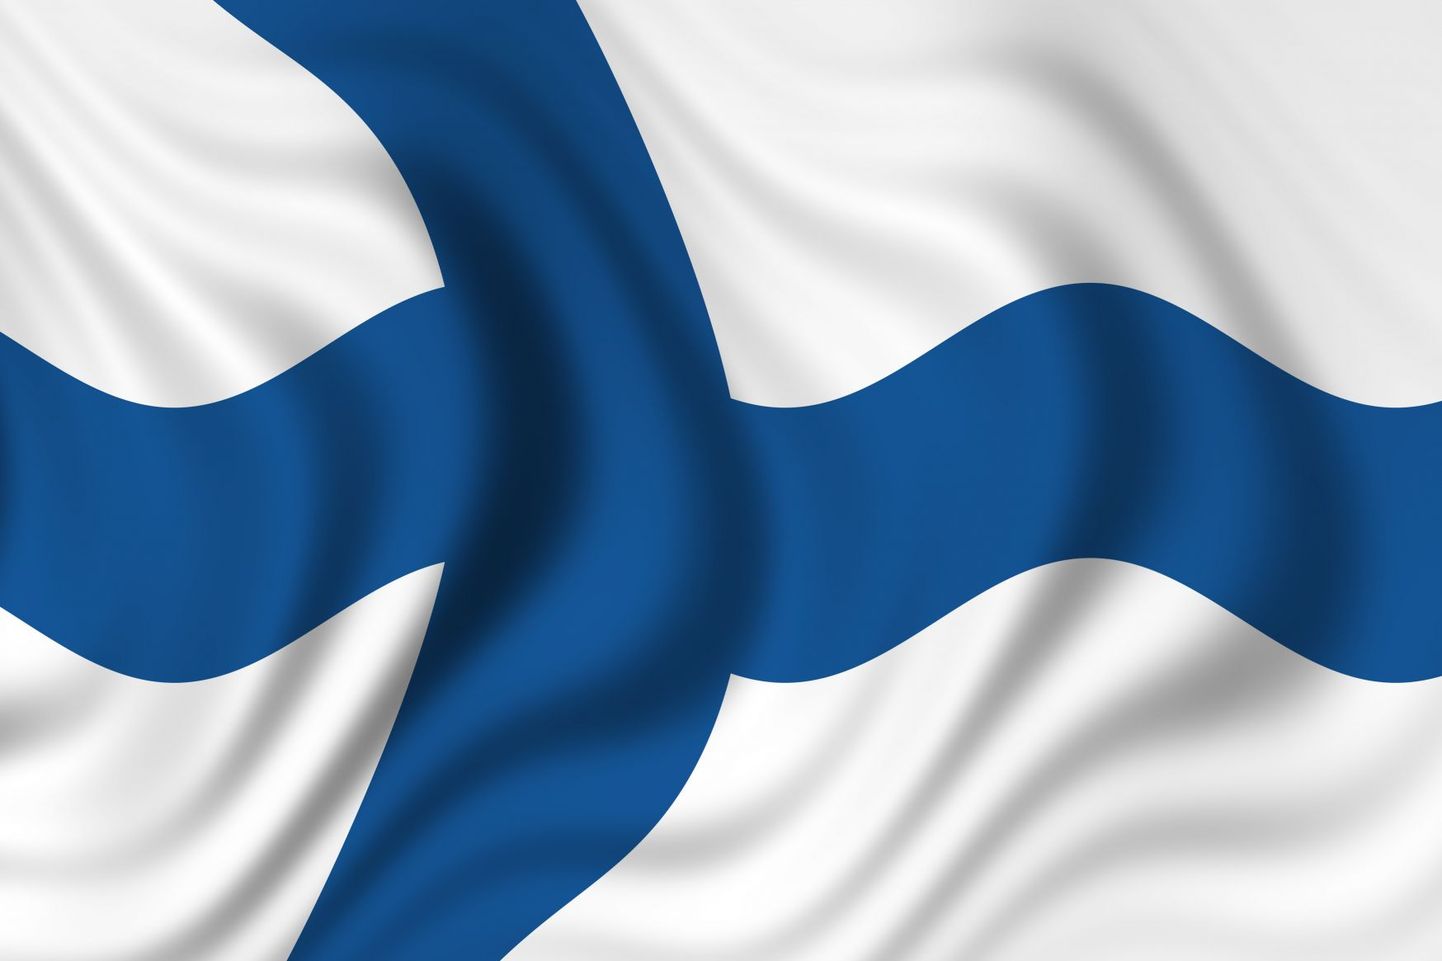 Soome on paljude eestlaste jaoks unelmate maa.